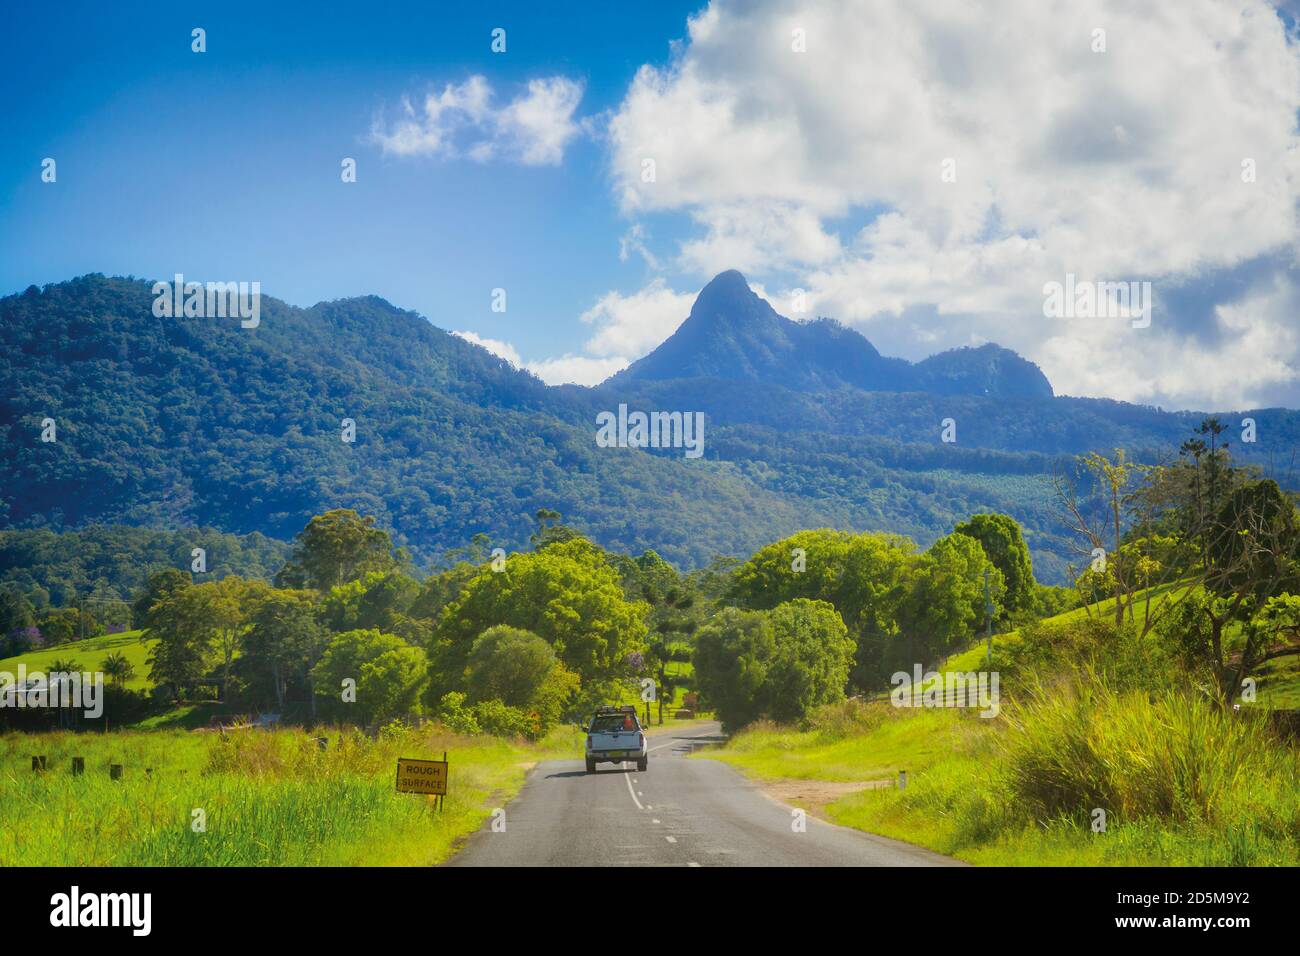 Nouvelle-Galles du Sud, Australie. Monter l'avertissement dans la gamme Tweed. Mount Warning fait partie des forêts tropicales de Gondwana en Australie, classées au patrimoine mondial de l'UNESCO S. Banque D'Images